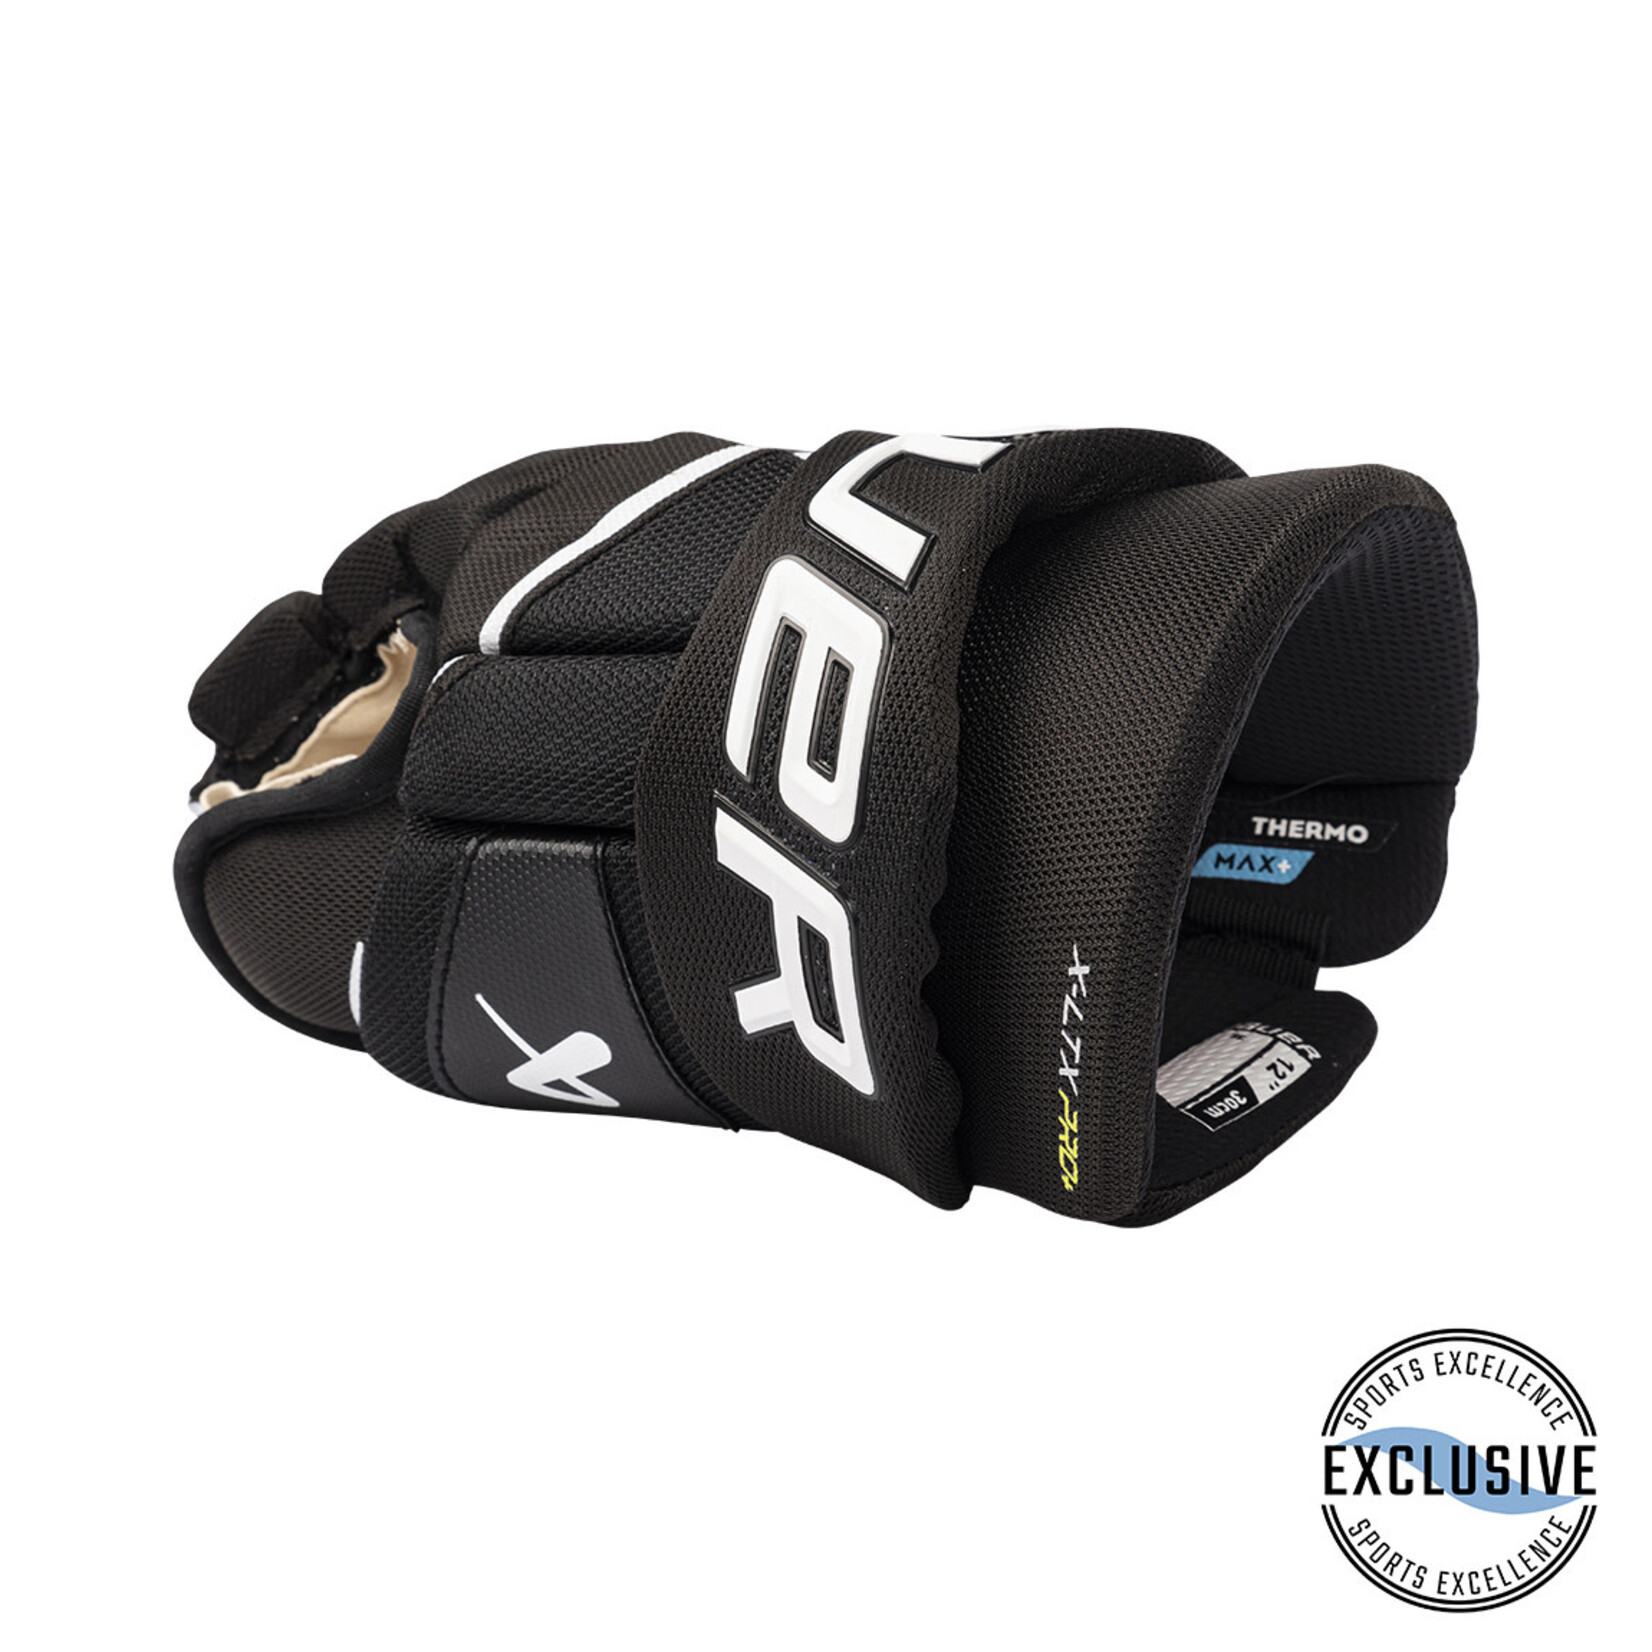 Bauer Bauer Hockey Gloves, Vapor X LTX Pro+, Junior